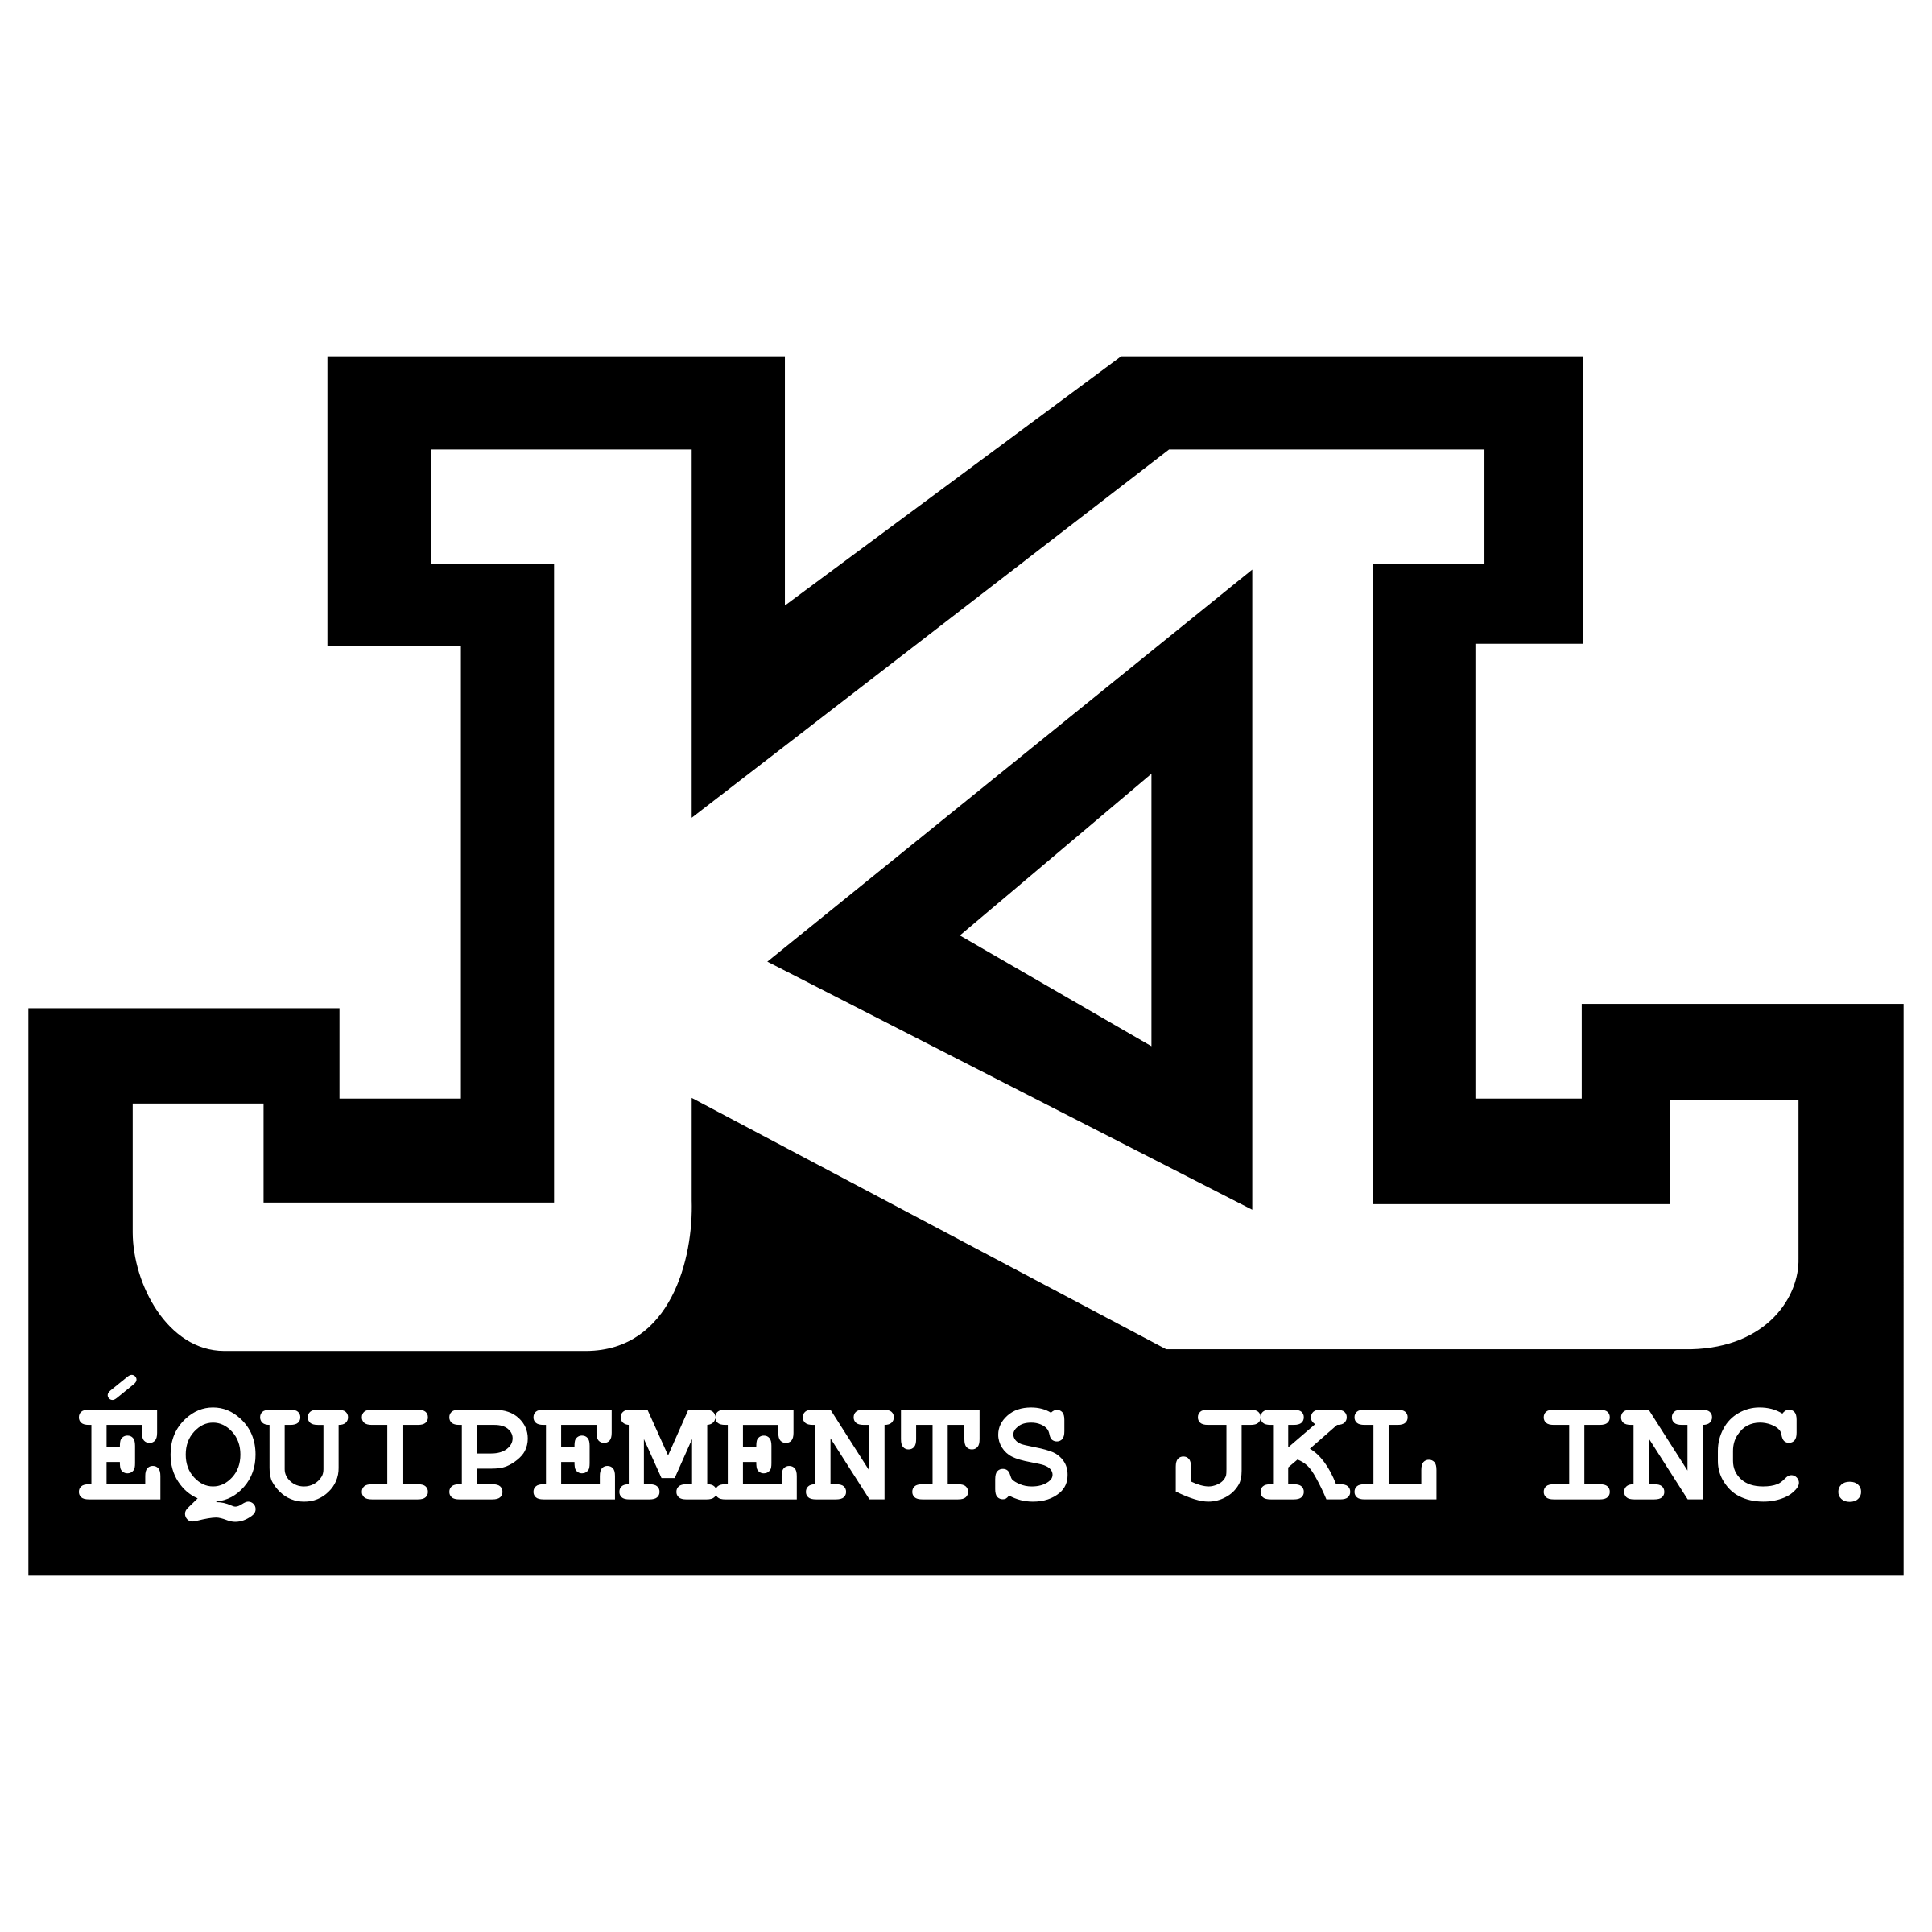 Jkl Logo - JKL Equipments Logo PNG Transparent & SVG Vector - Freebie Supply